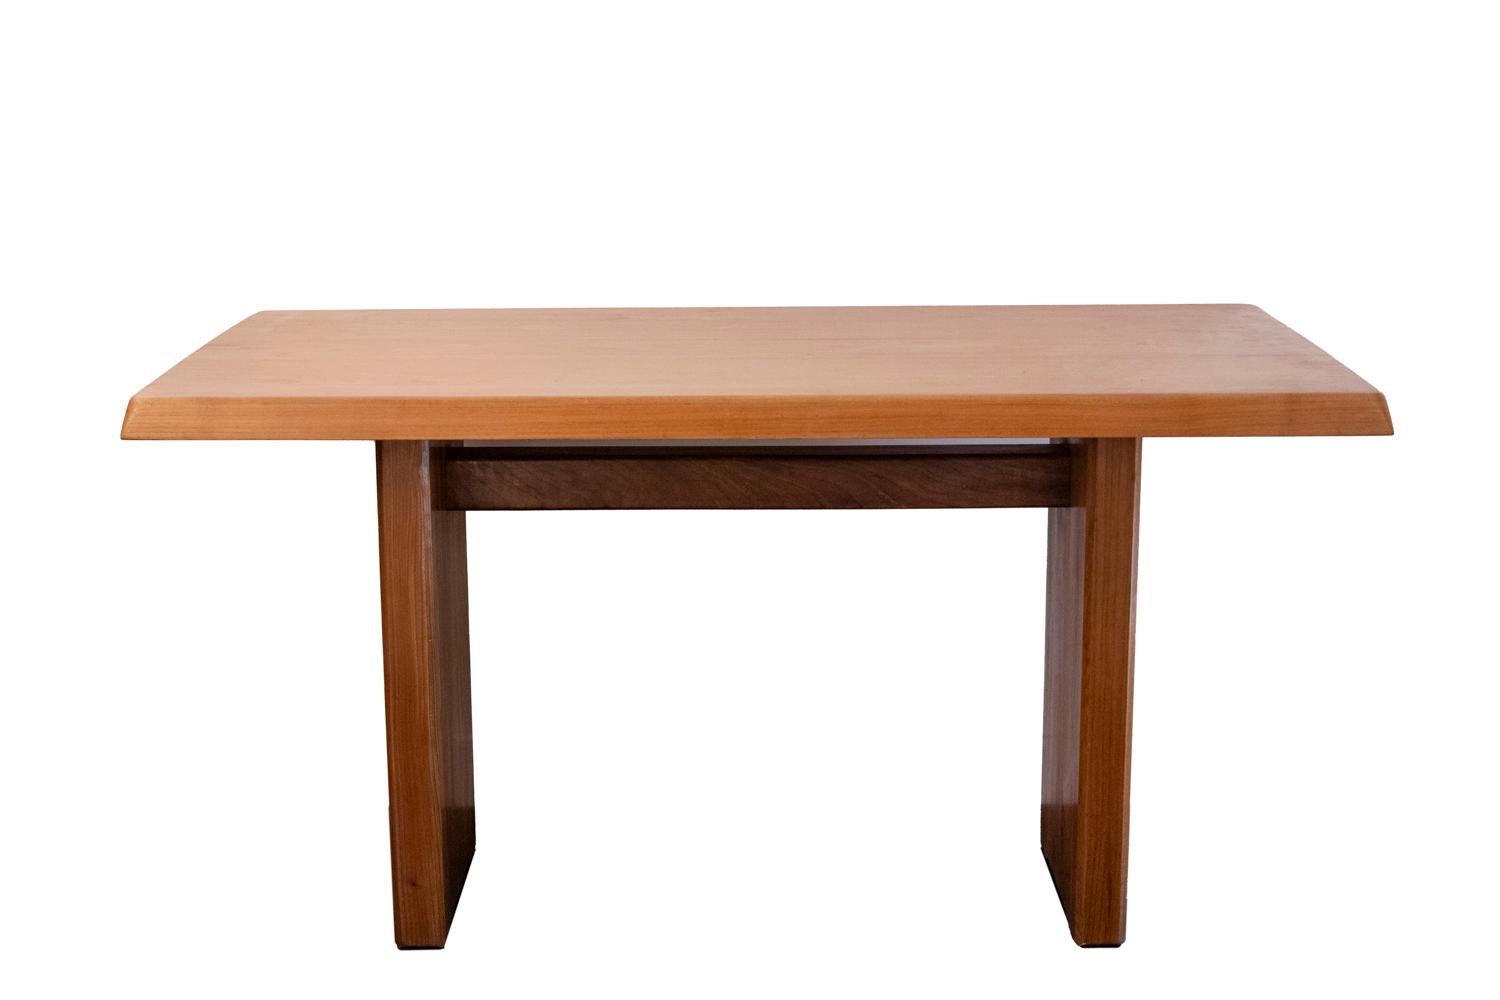 Pierre Chapo, par.

Table en orme naturel, modèle T14A, de forme rectangulaire.

Travail français réalisé dans les années 1960.